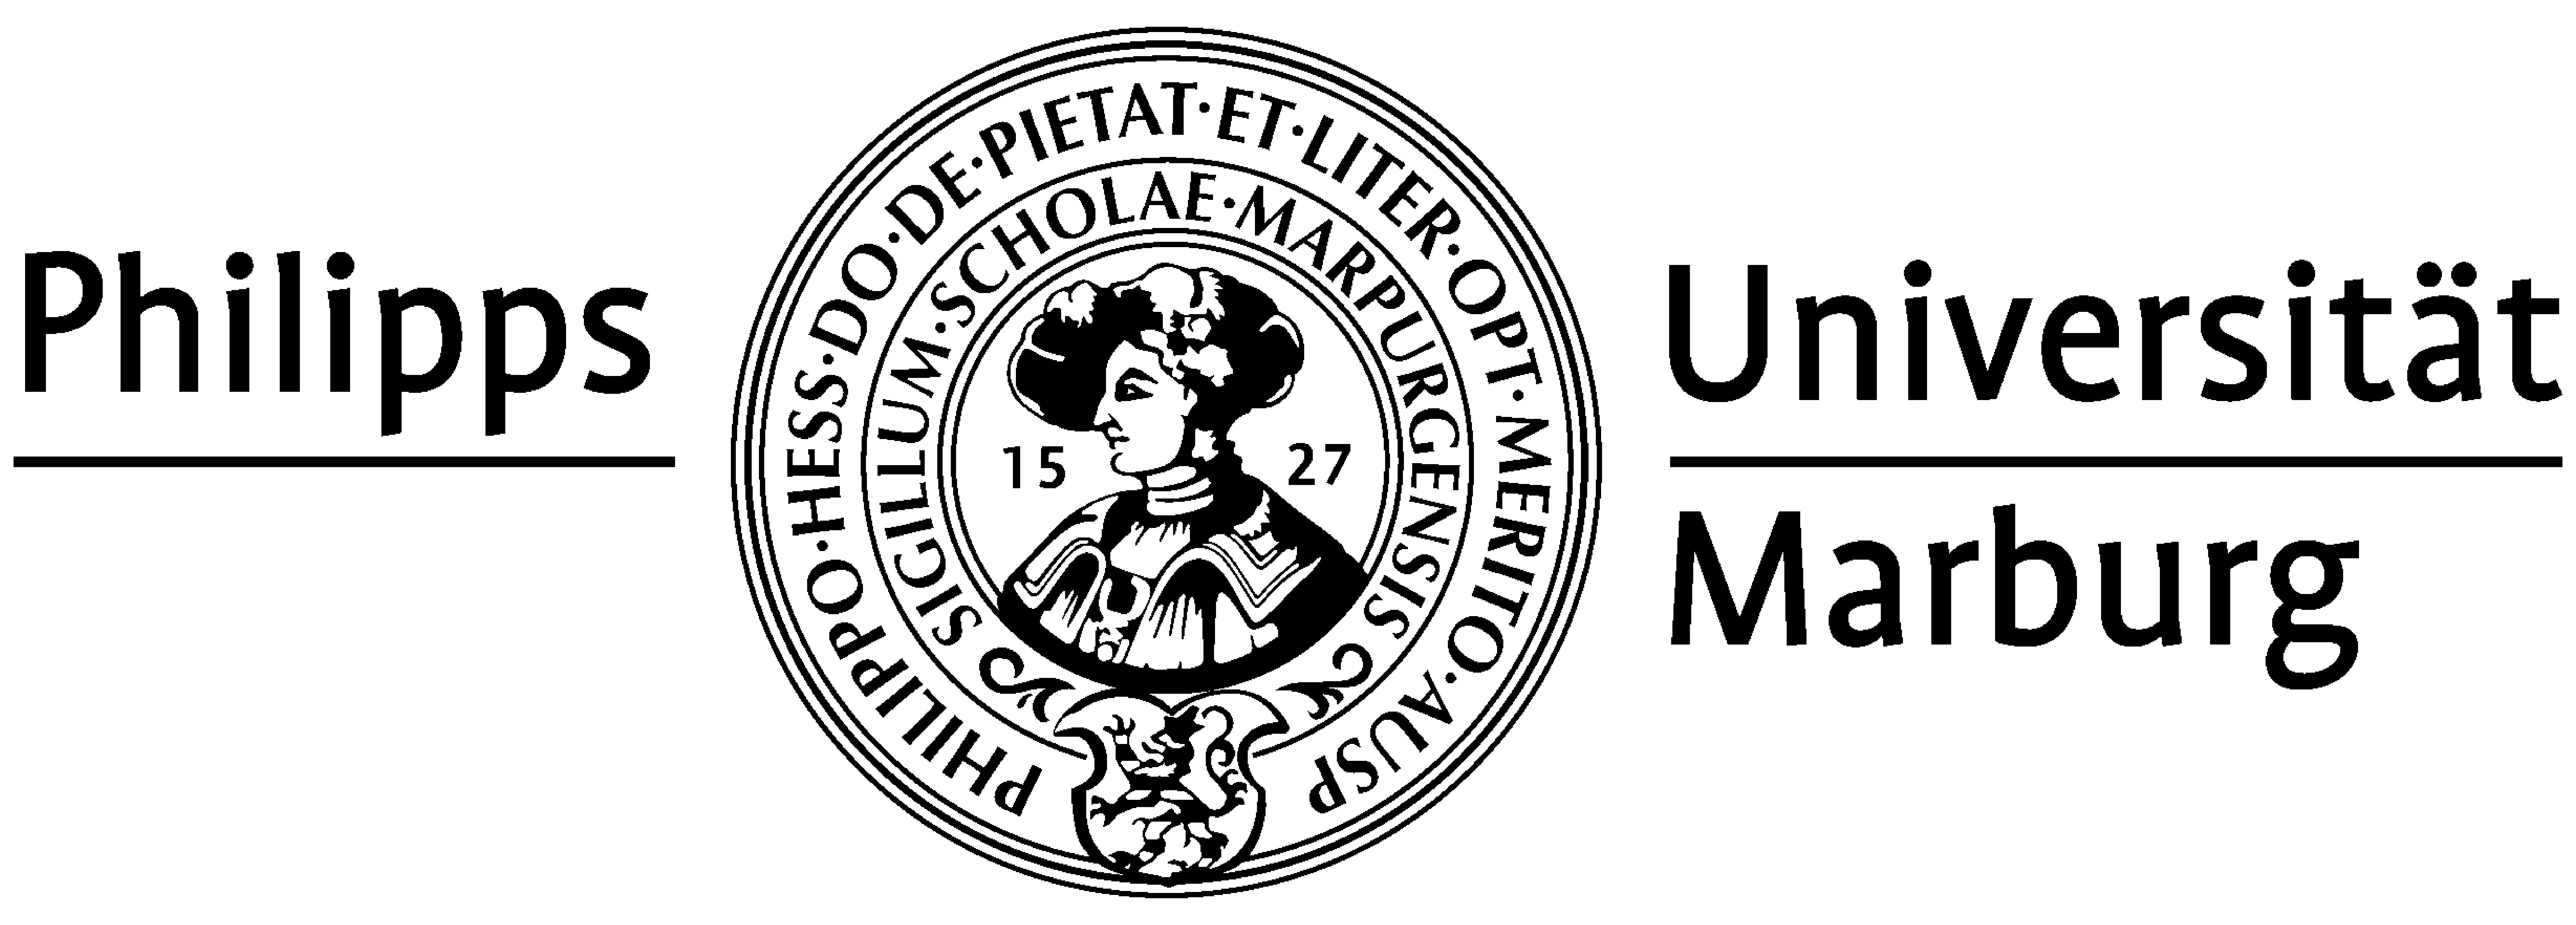 UIN Logo photo - 1